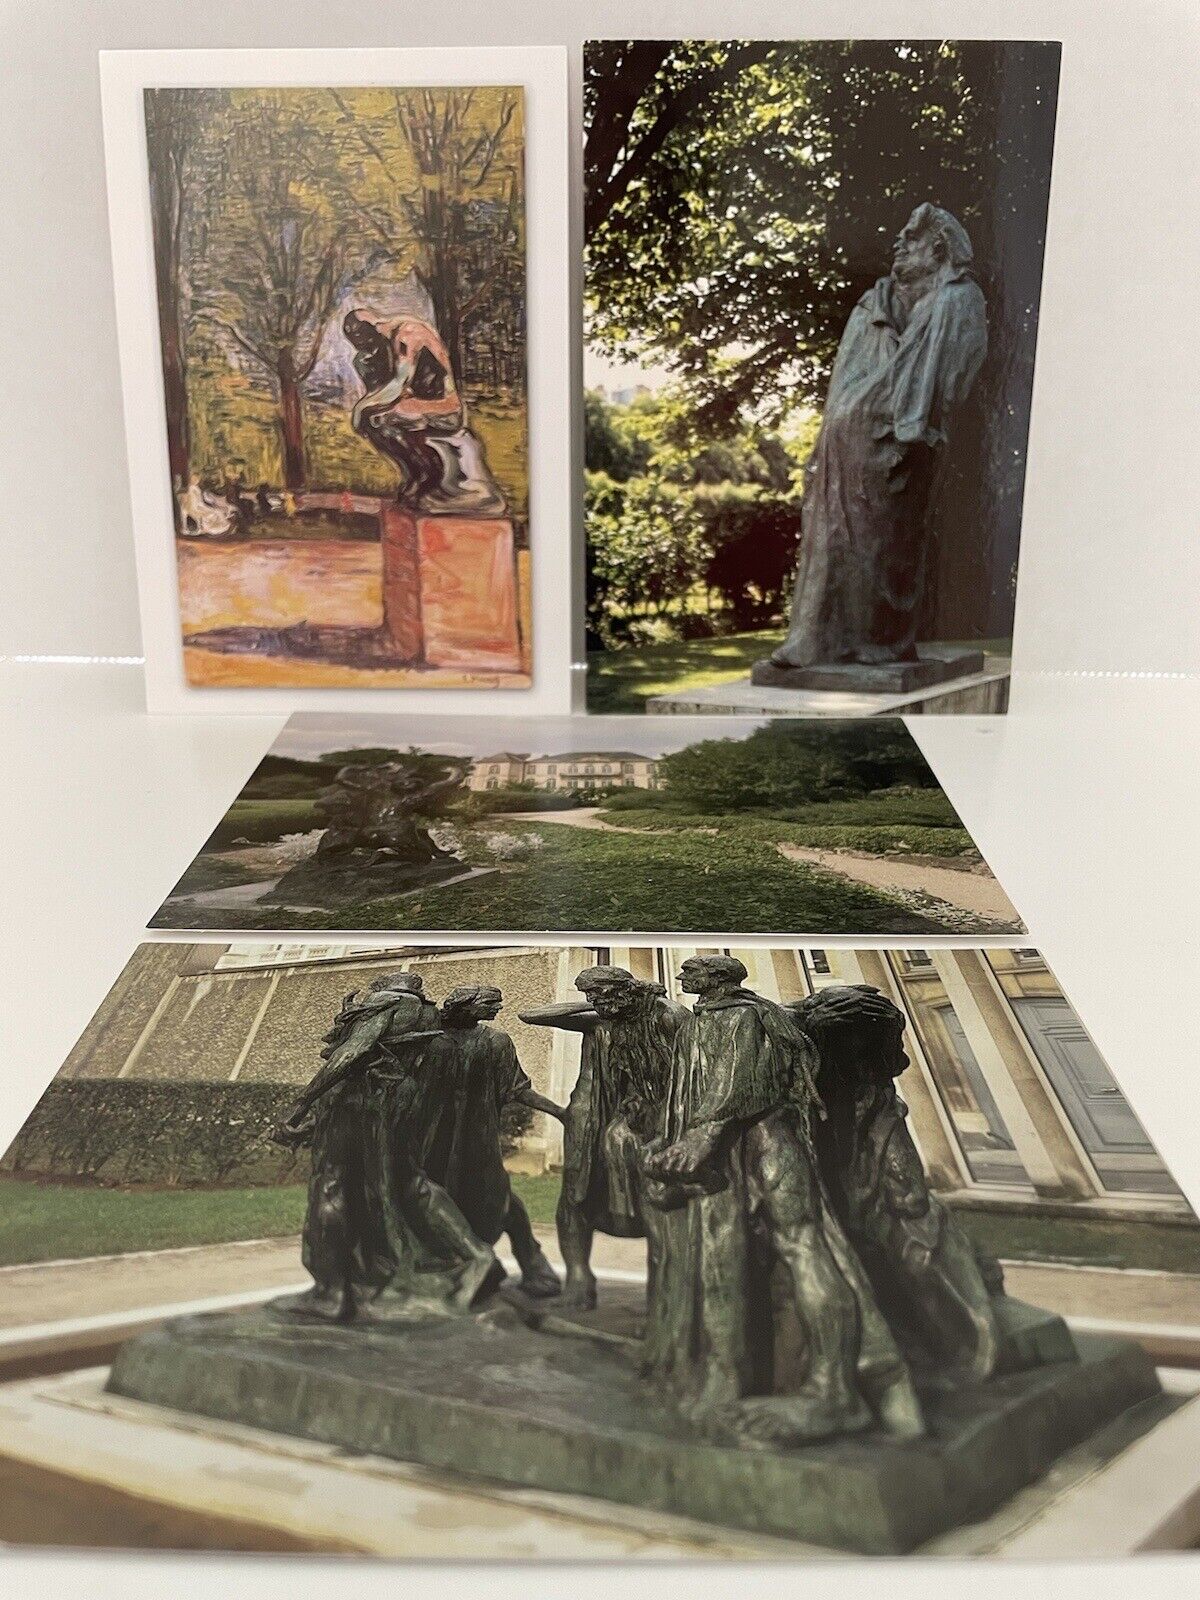  Auguste Rodin Museum Paris France Musee Rodin Souvenir Postcard LOT of 4